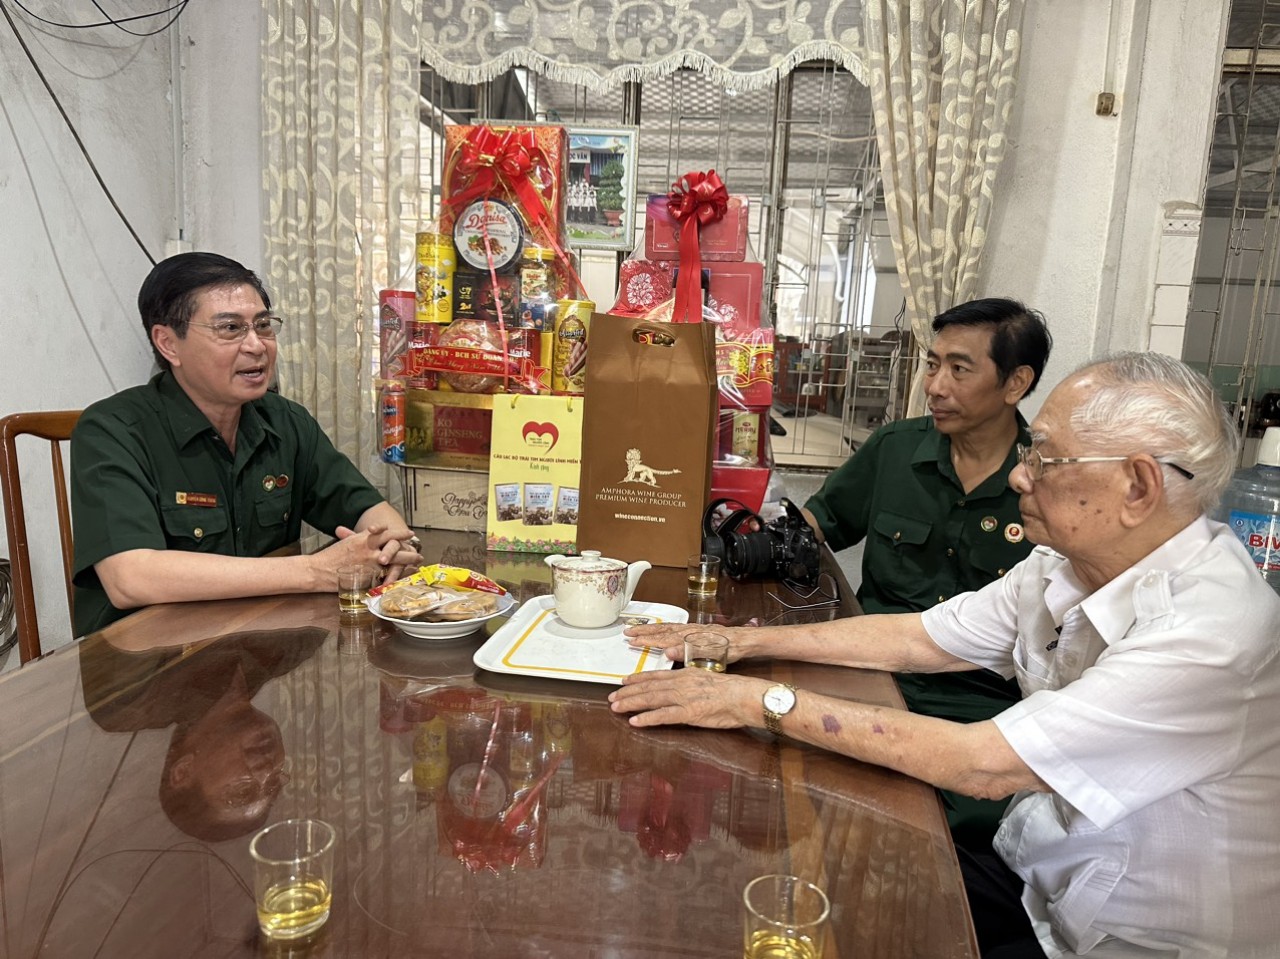 CLB Trái tim người lính miền Tây gửi lời hỏi thăm sức khỏe và tặng quà cho Thiếu tướng Nguyễn Văn Phê trước thêm năm mới